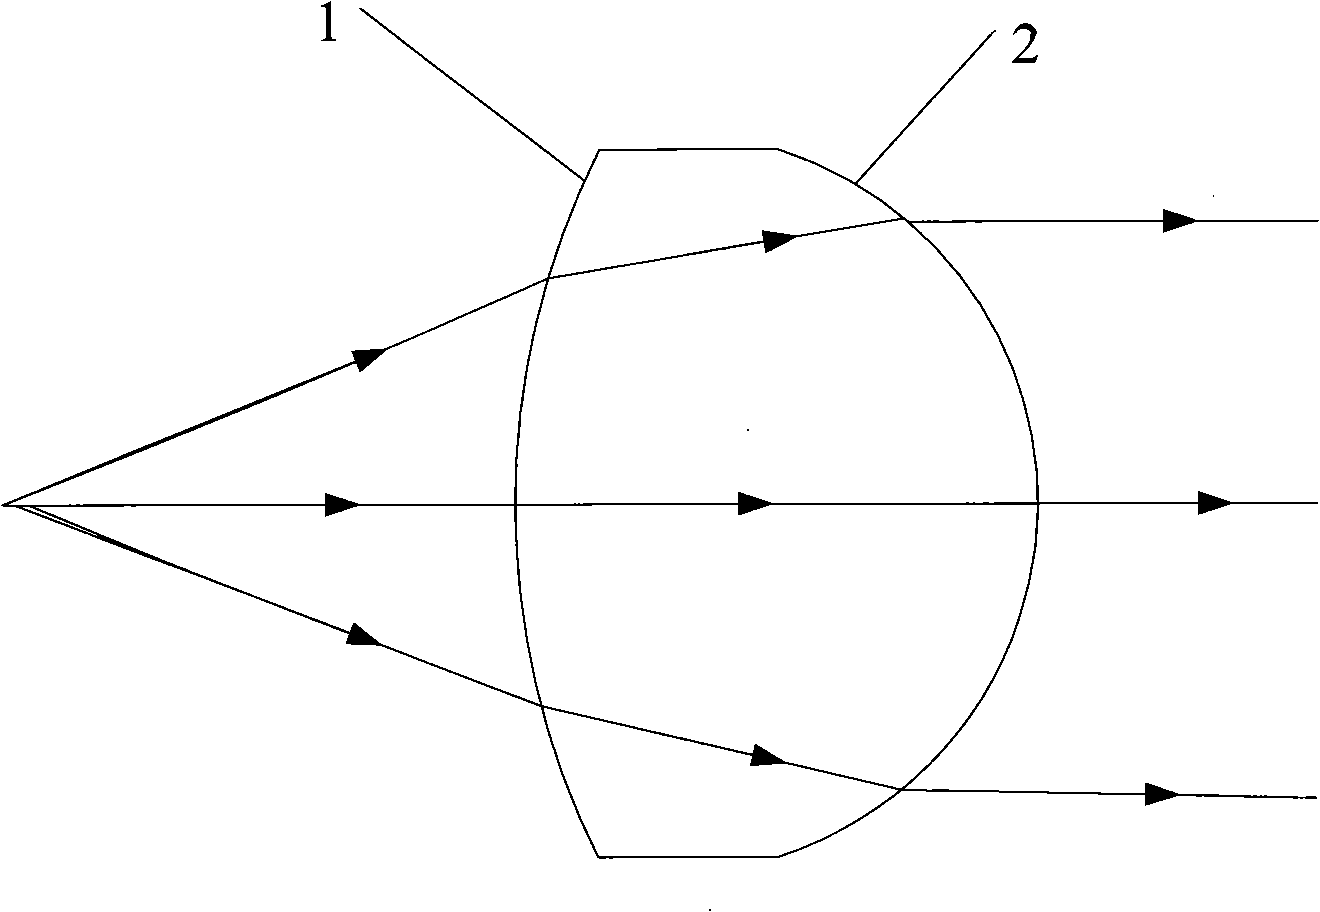 Non-spherical lens design method and non-spherical lens